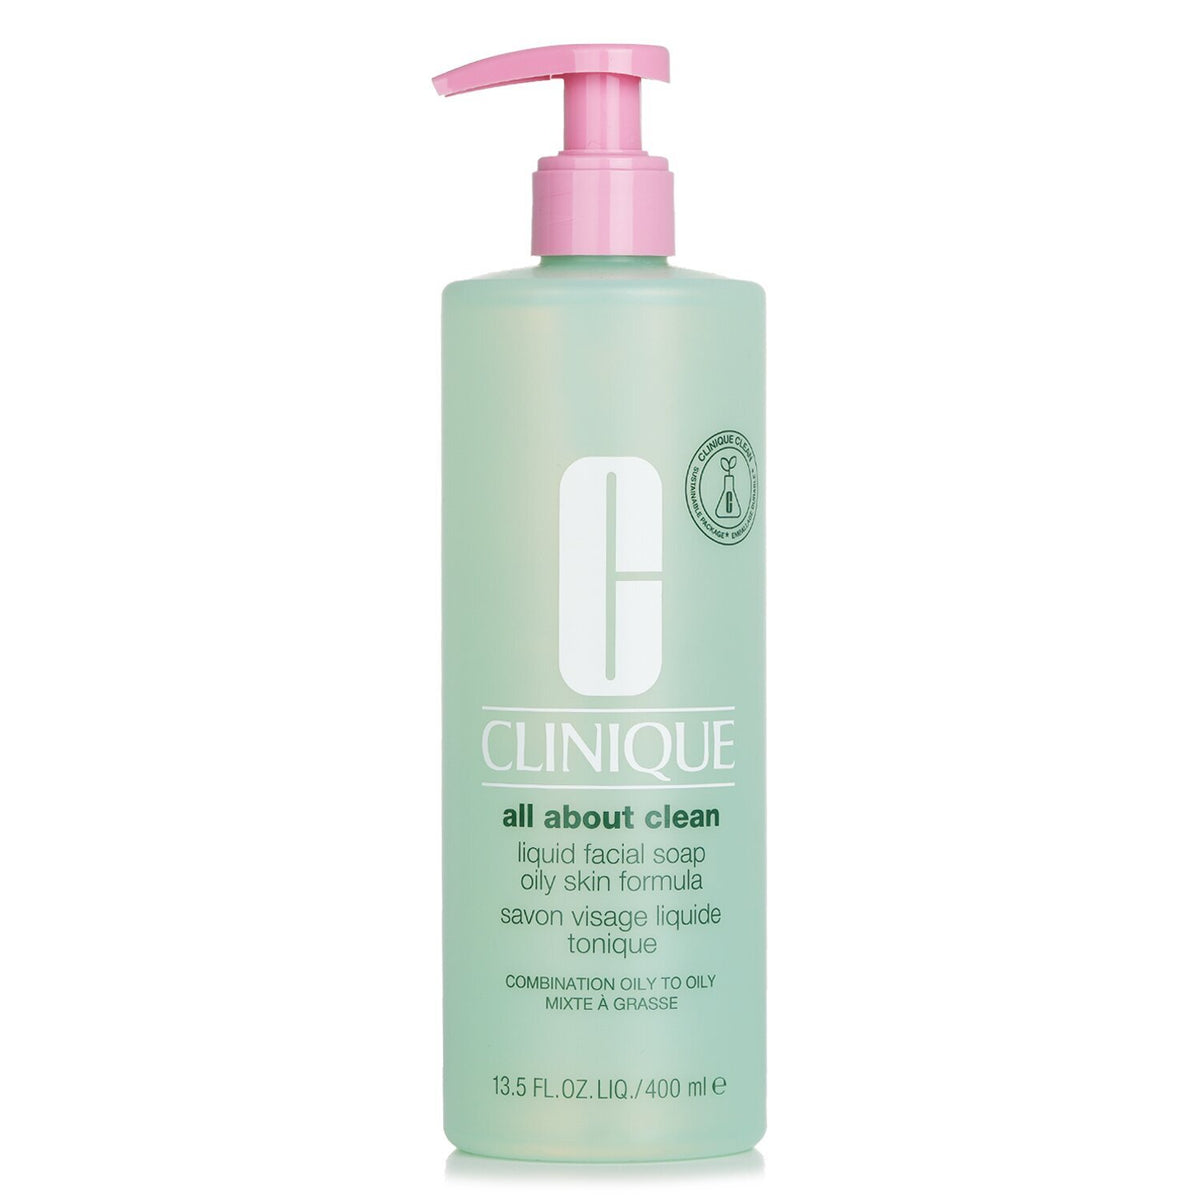 Clinique All About Clean Liquid Facial Soap Oily Skin Formula 400Ml קליניק סבון נוזלי לפנים המתאים לעור מעורב עד שמנוני מאוד - GLAM42